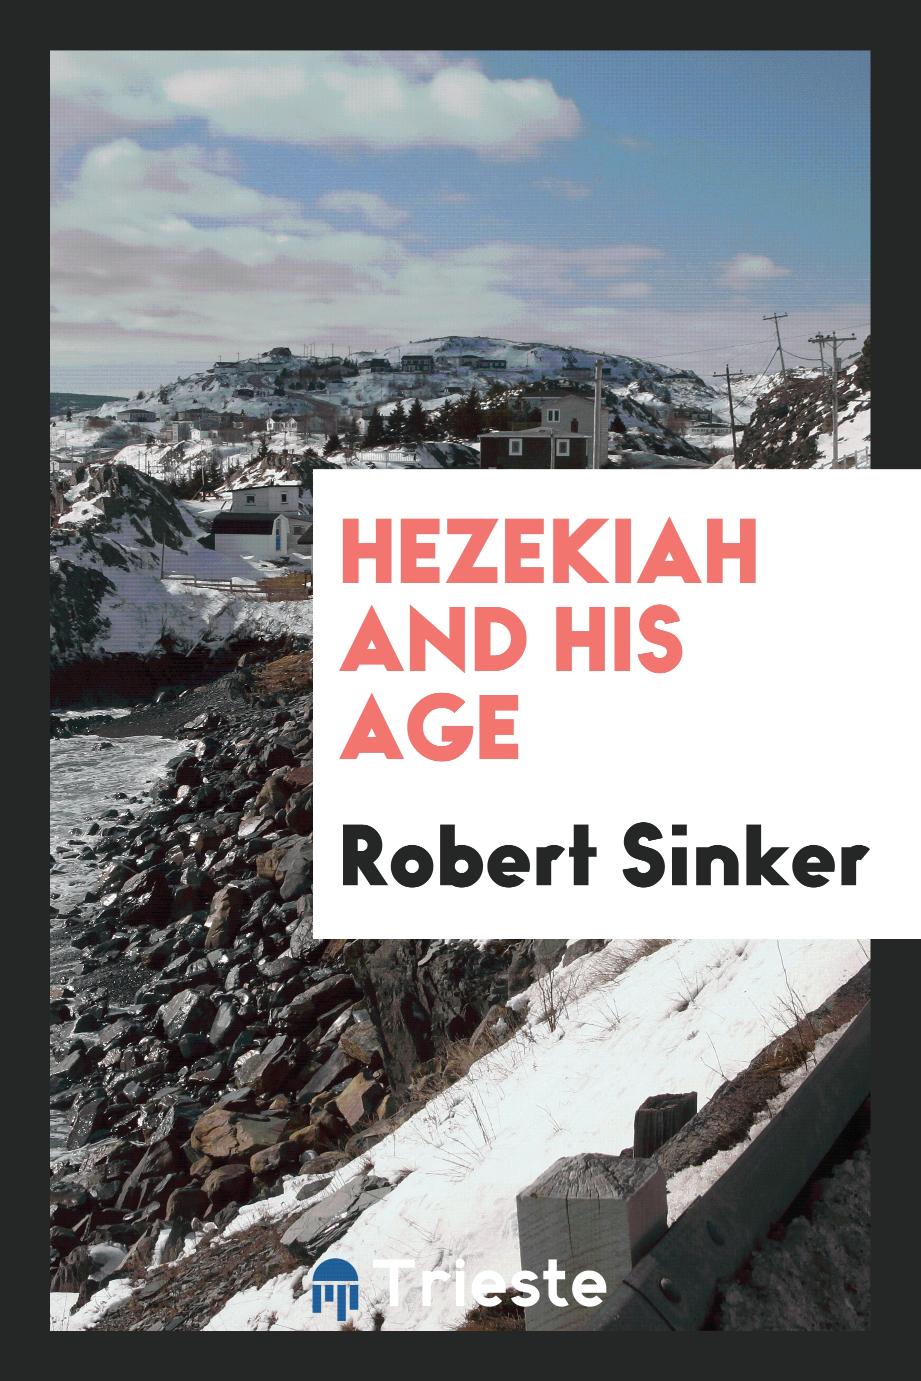 Hezekiah and his age